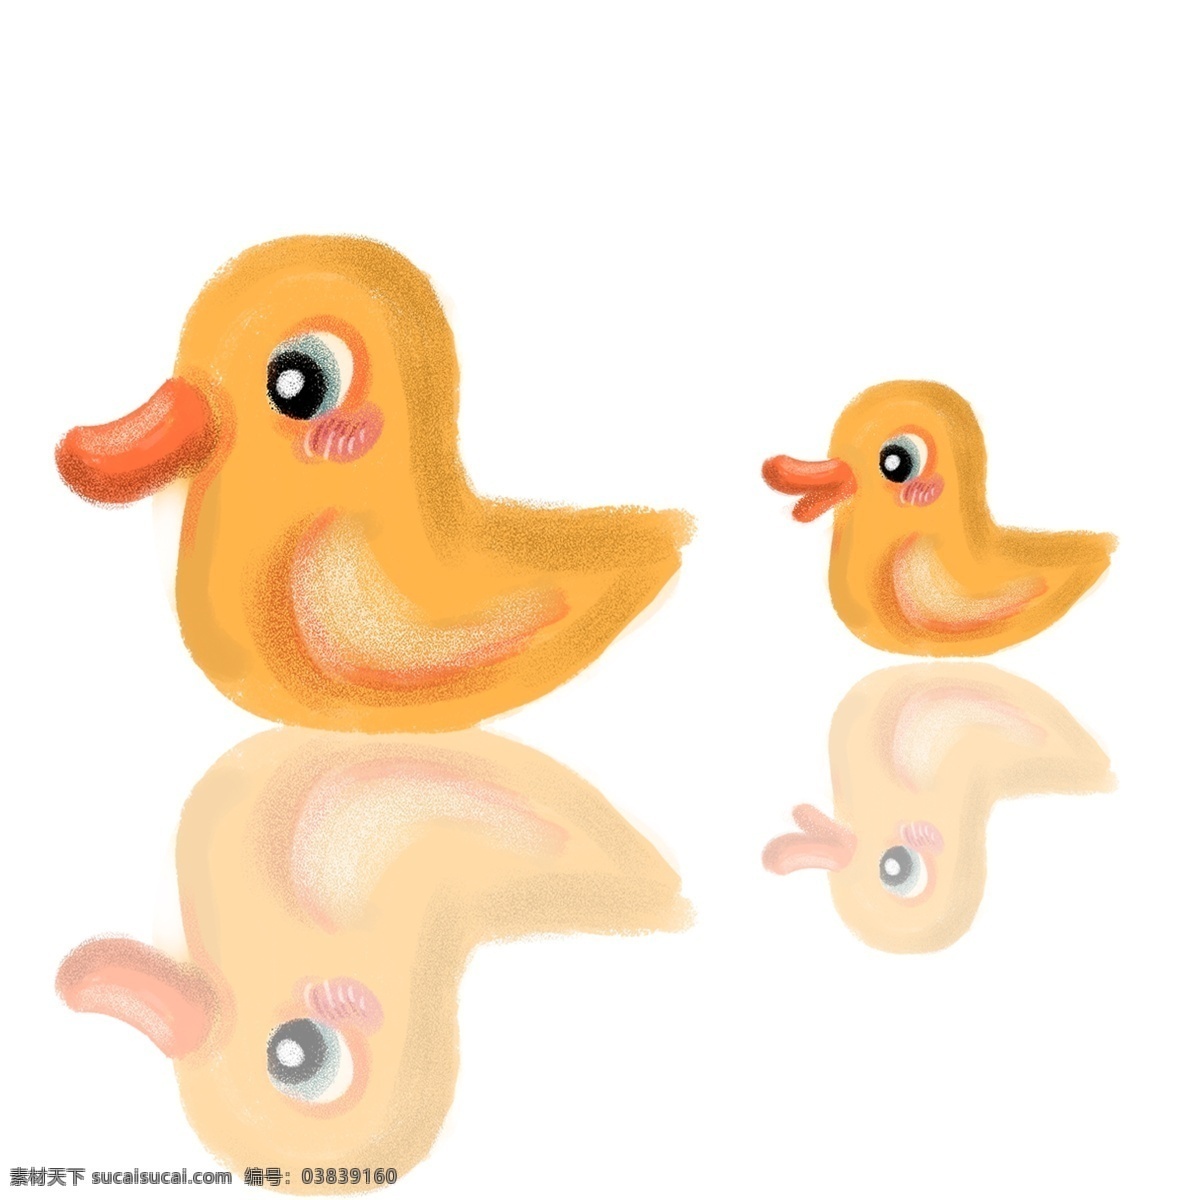 可爱 黄色 小 鸭子 图案 动物 小鸭子 手绘 绘画 简约 创意 小清新 装饰 水彩 插画